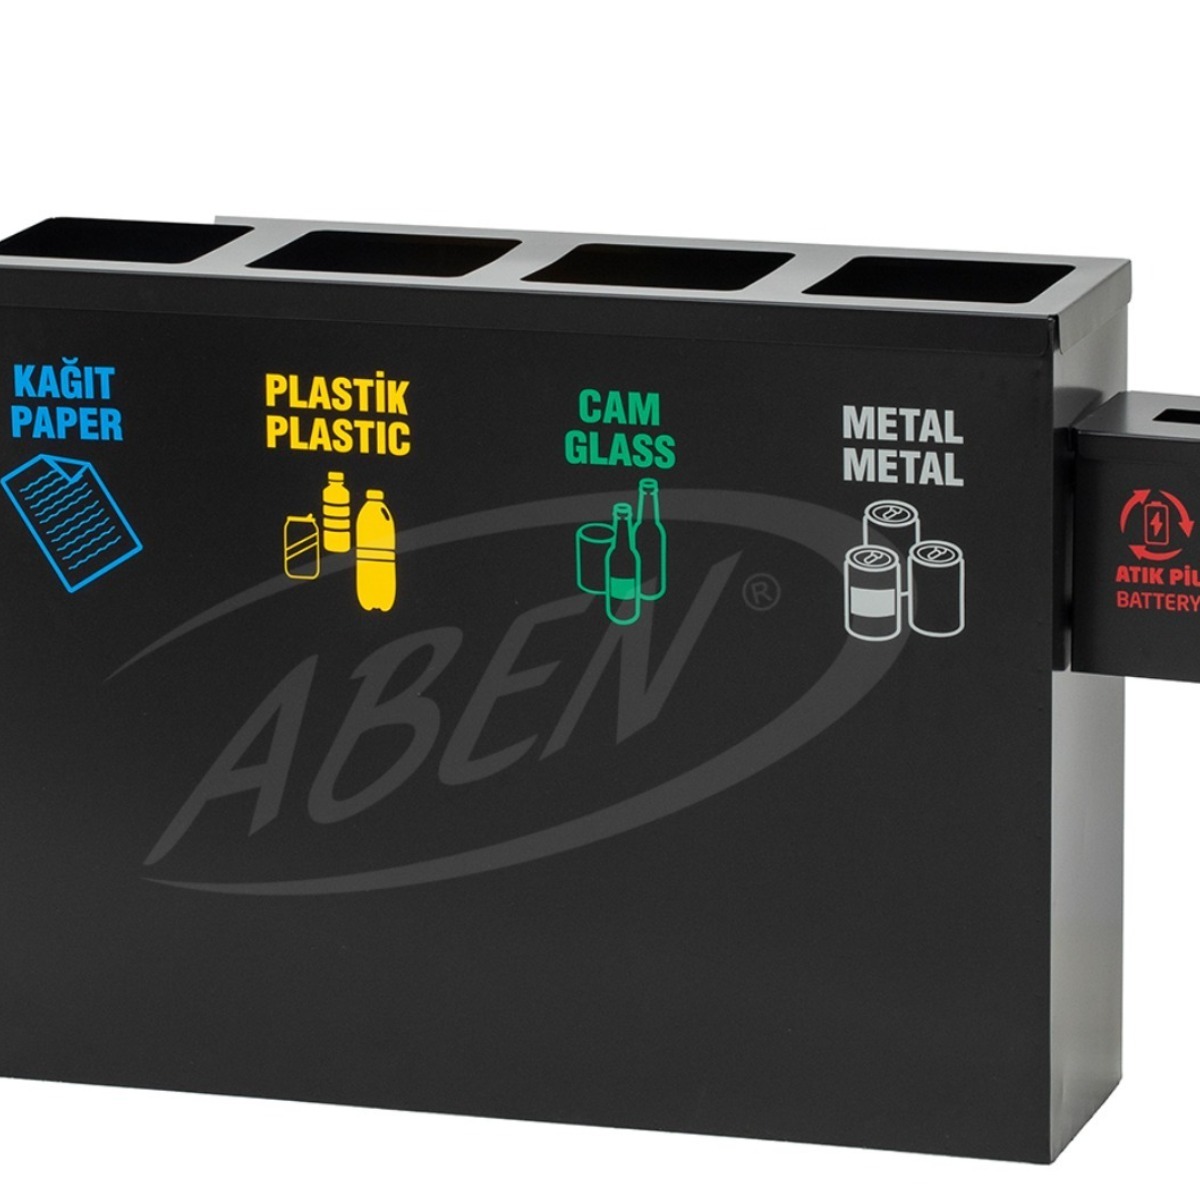 AB-702 4’Part Recycle Bin + Battery Box adlı ürünün logosu